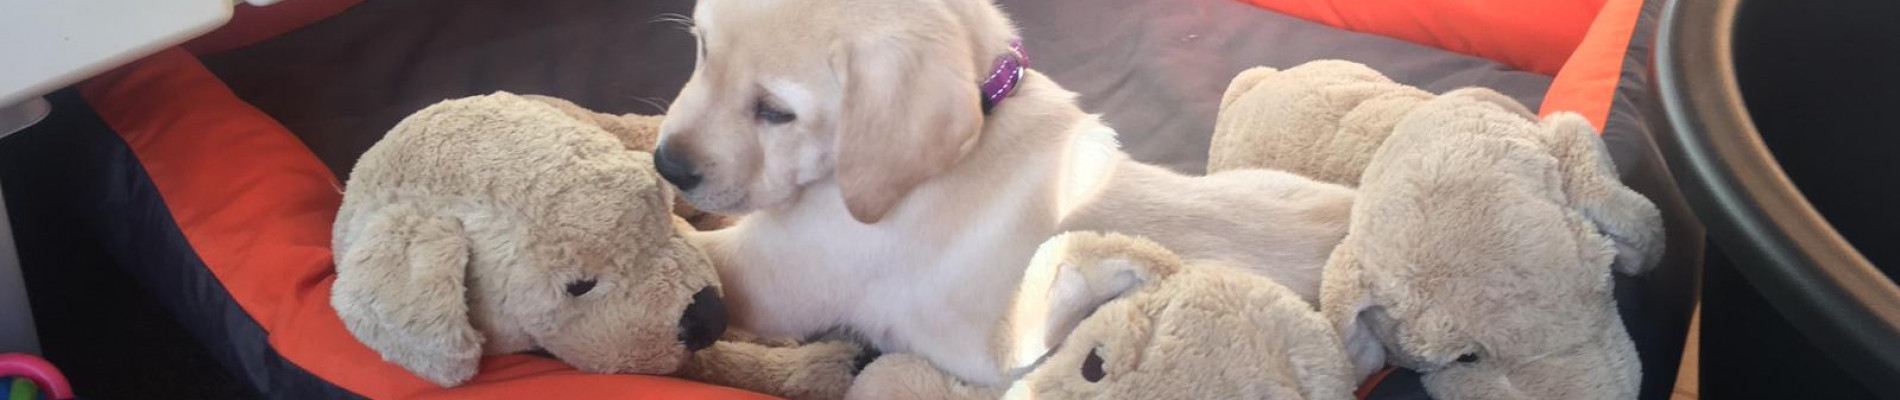 blonde pup in een mandje met knuffels